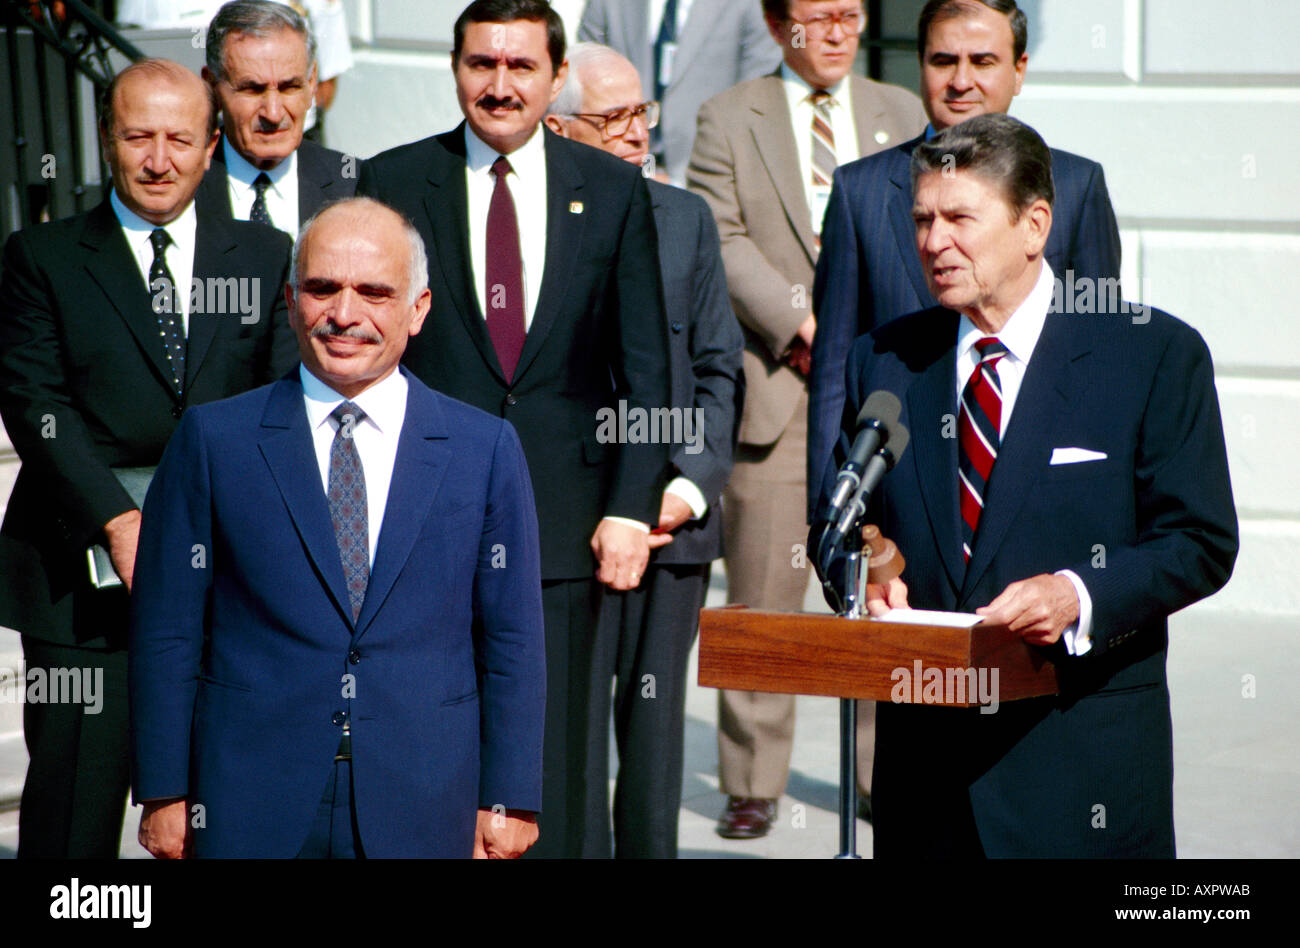 Rencontre du président AMÉRICAIN Ronald Reagan avec le roi Hussein de Jordanie à l'extérieur de la Maison Blanche 21 décembre 1982 Washington DC USA Banque D'Images